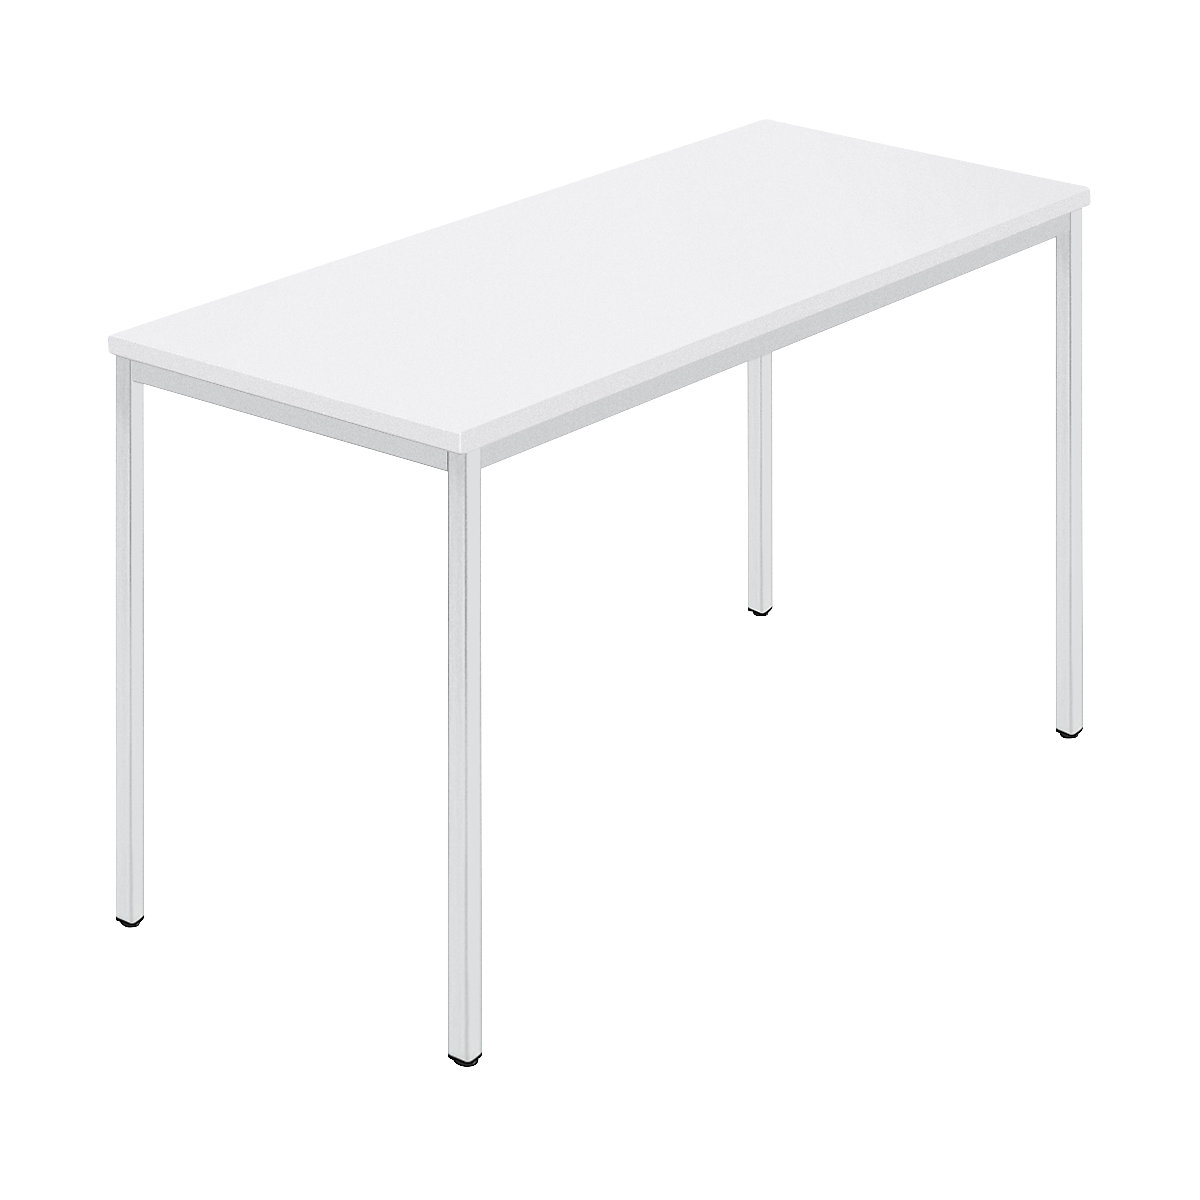 Rechthoekige tafel, vierkante buis met coating, b x d = 1200 x 600 mm, wit / grijs-8